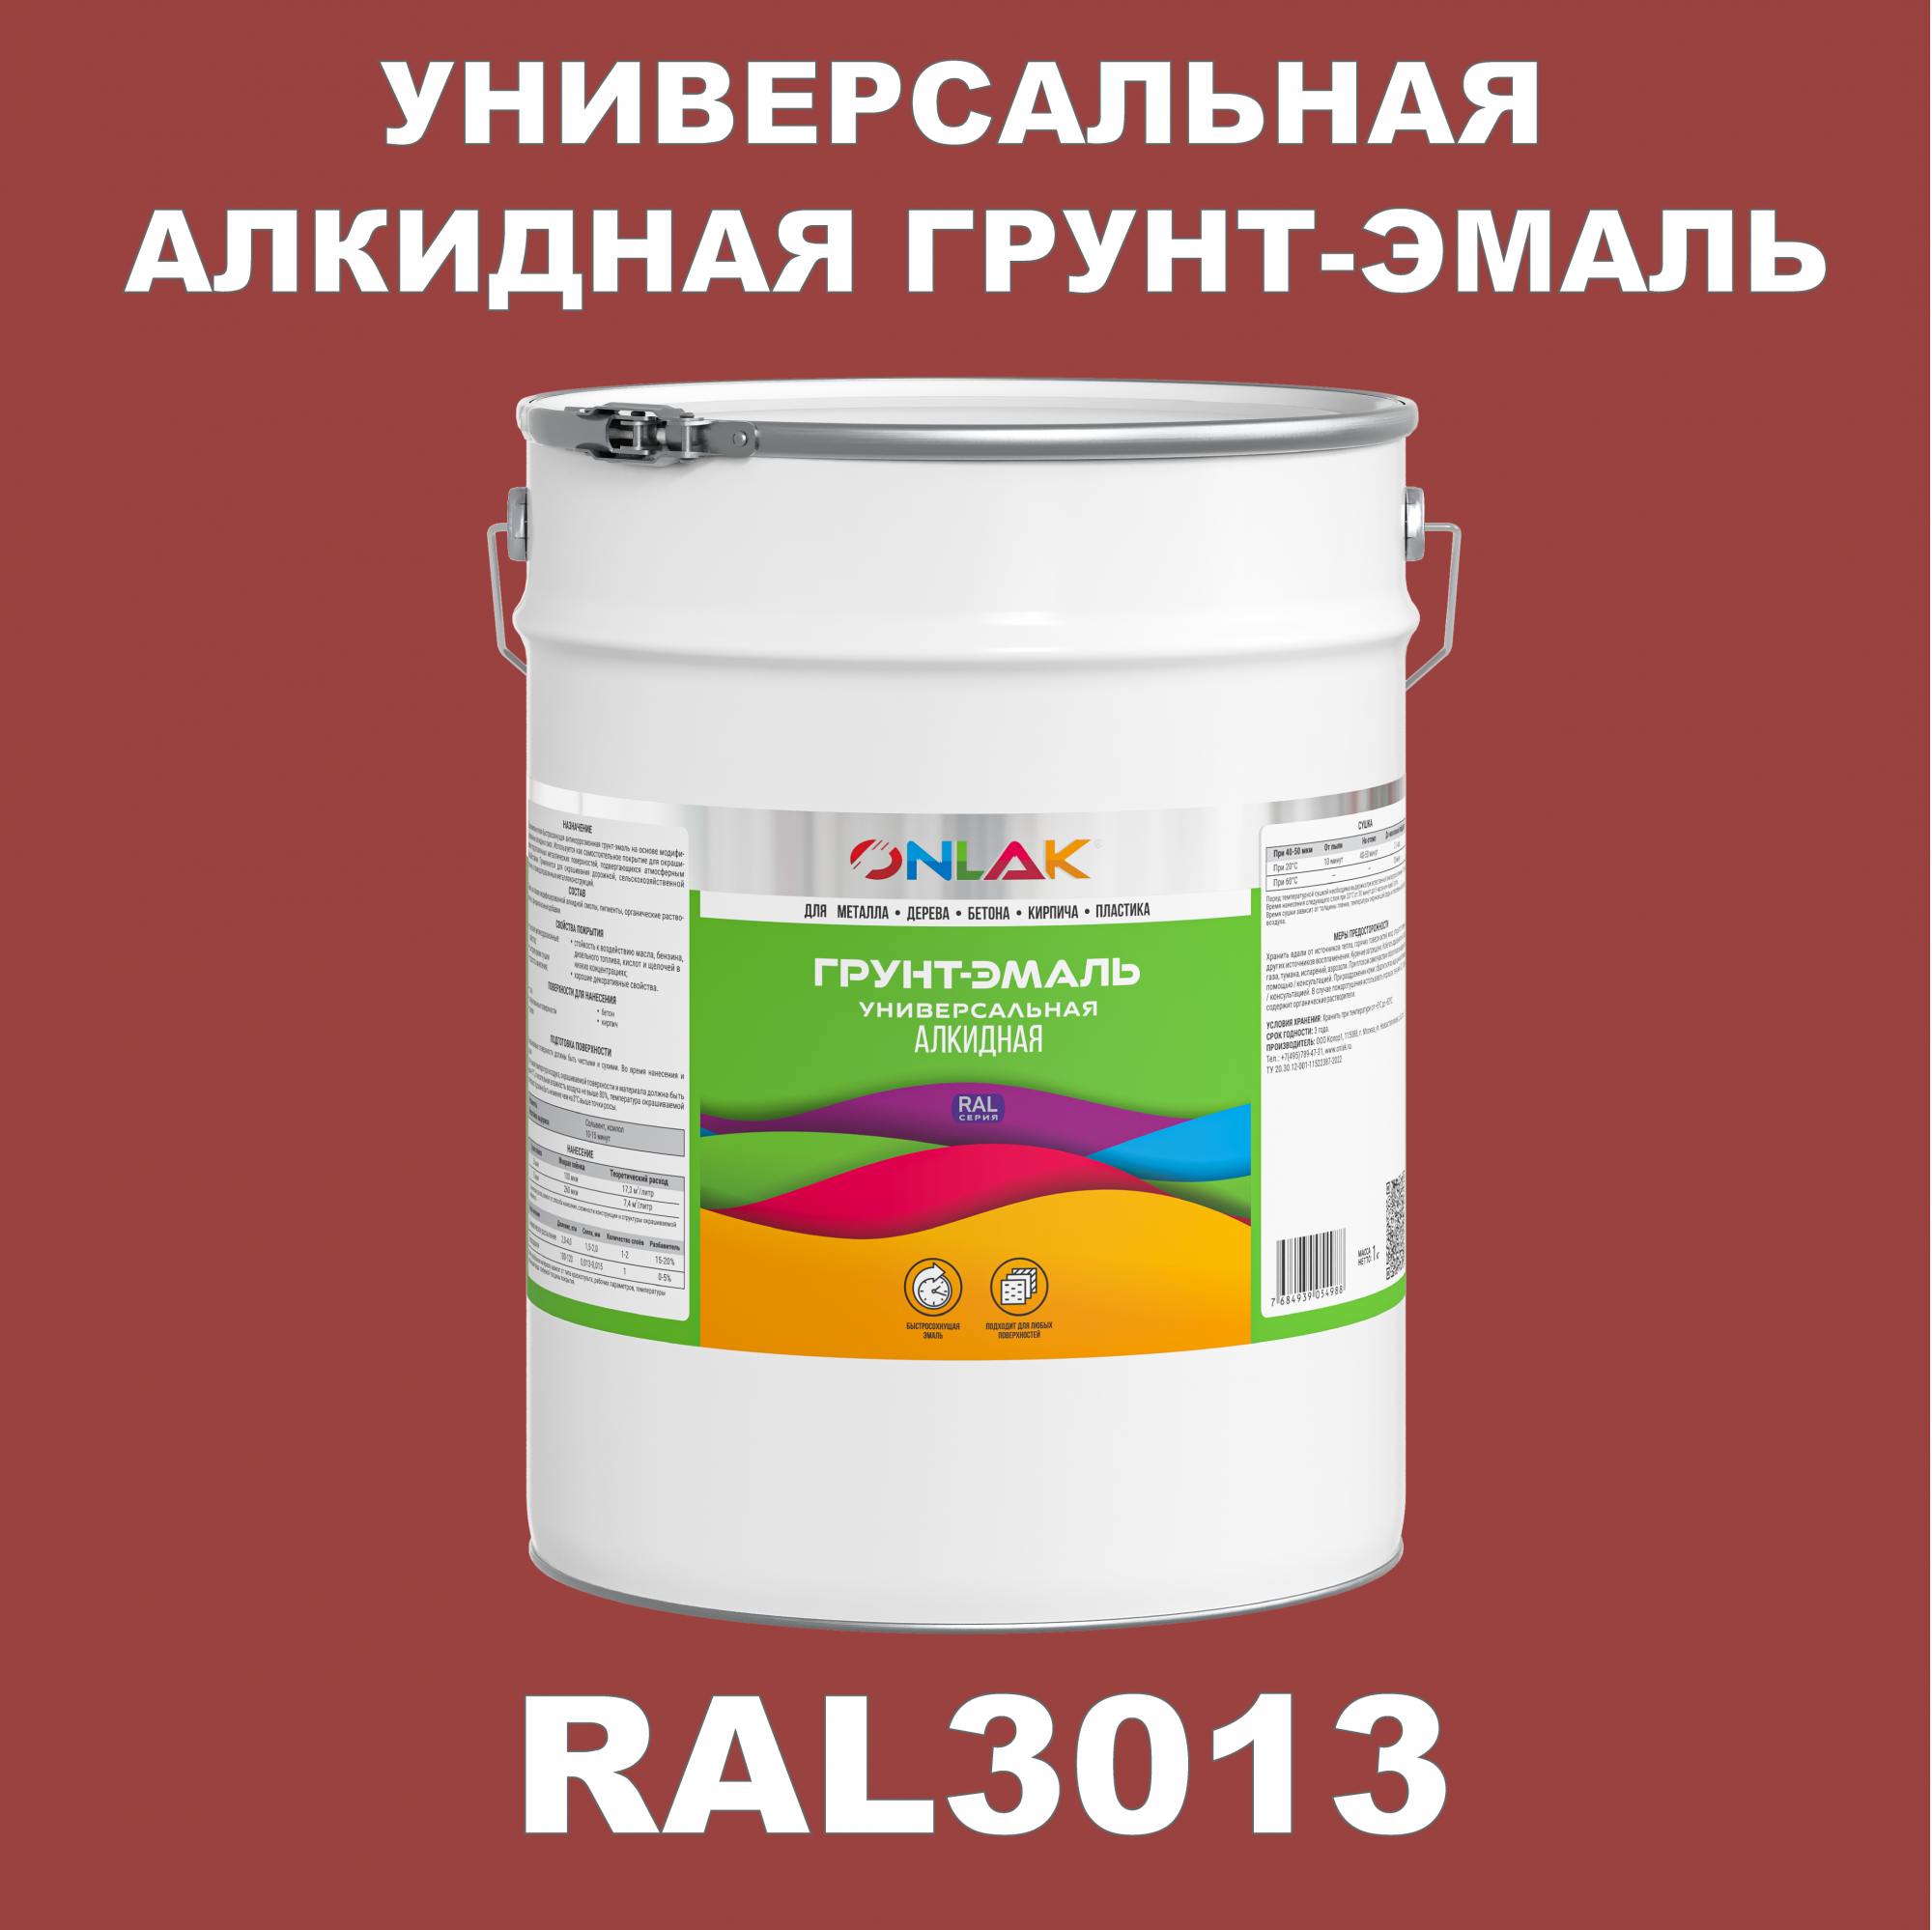 Грунт-эмаль ONLAK 1К RAL3013 антикоррозионная алкидная по металлу по ржавчине 20 кг